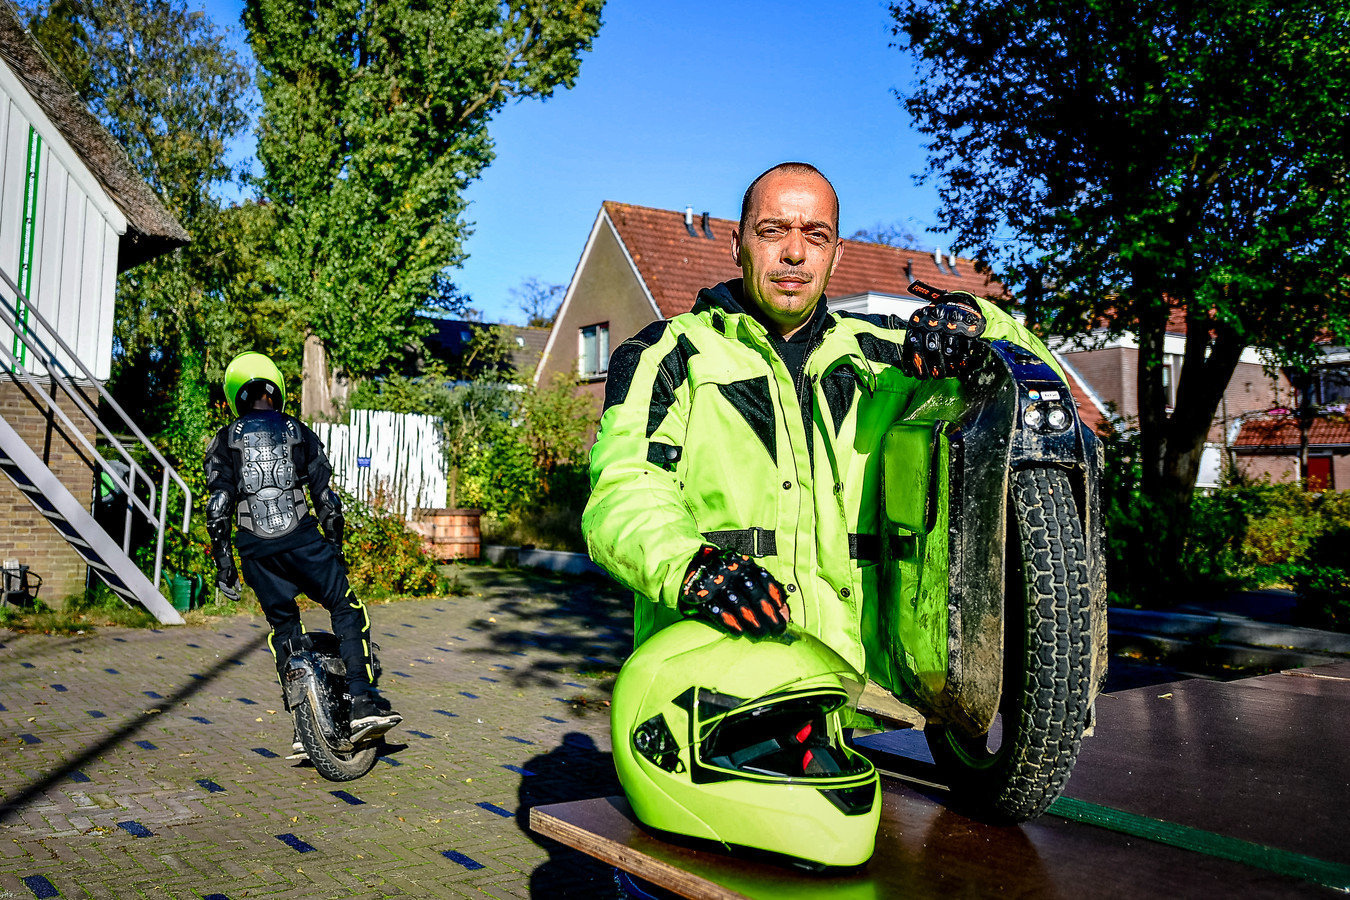 Onhandig Kast Koor In beslag genomen eenwieler van Bob te koop aangeboden op veilingsite:  'Absurd' | Foto | gelderlander.nl